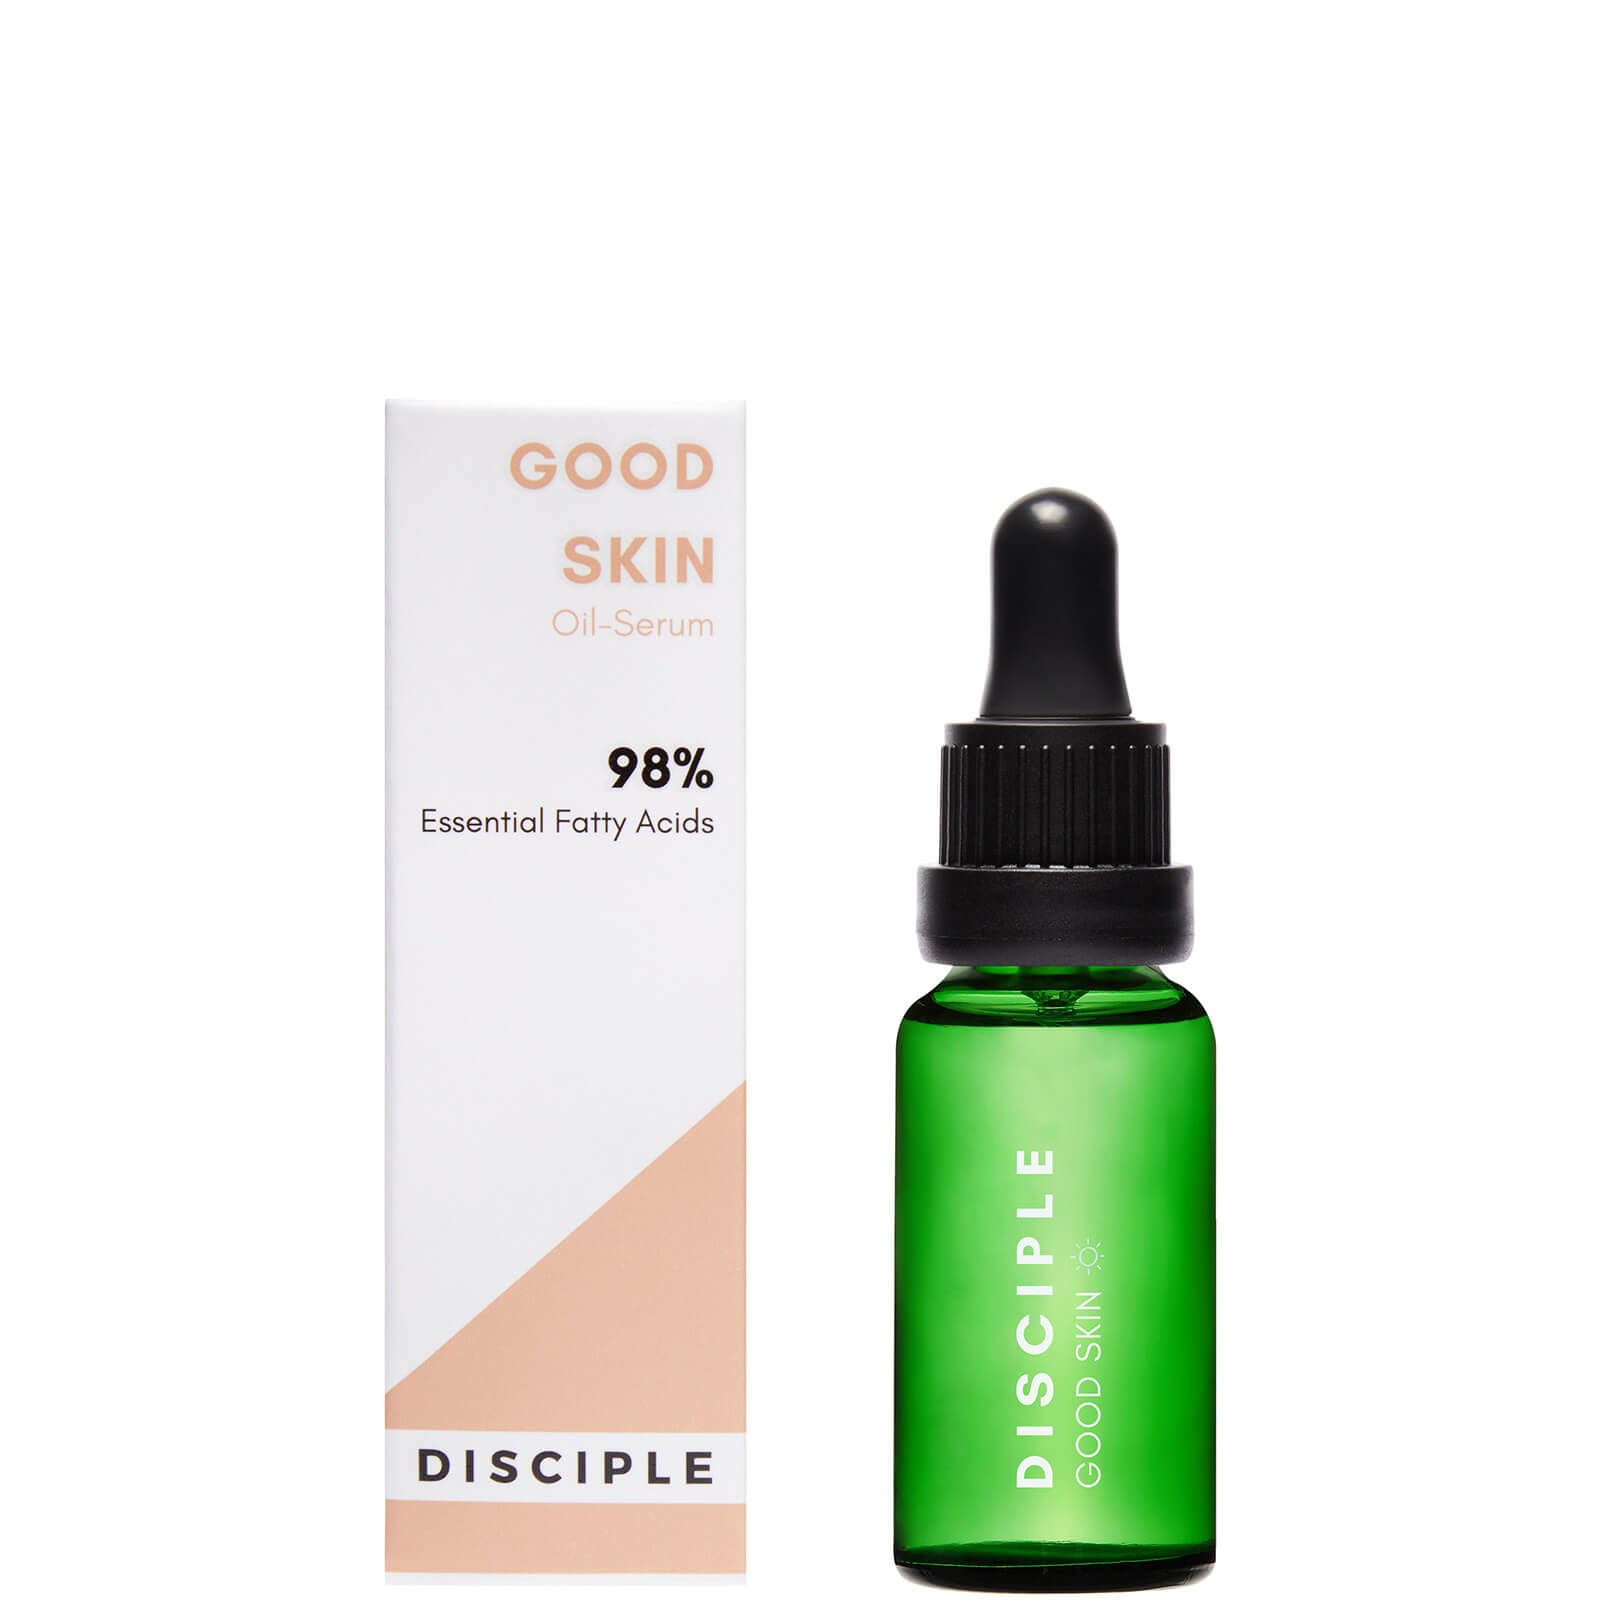 DISCIPLE Skincare Good Skin Face Oil 20ml lookfantastic.com imagine